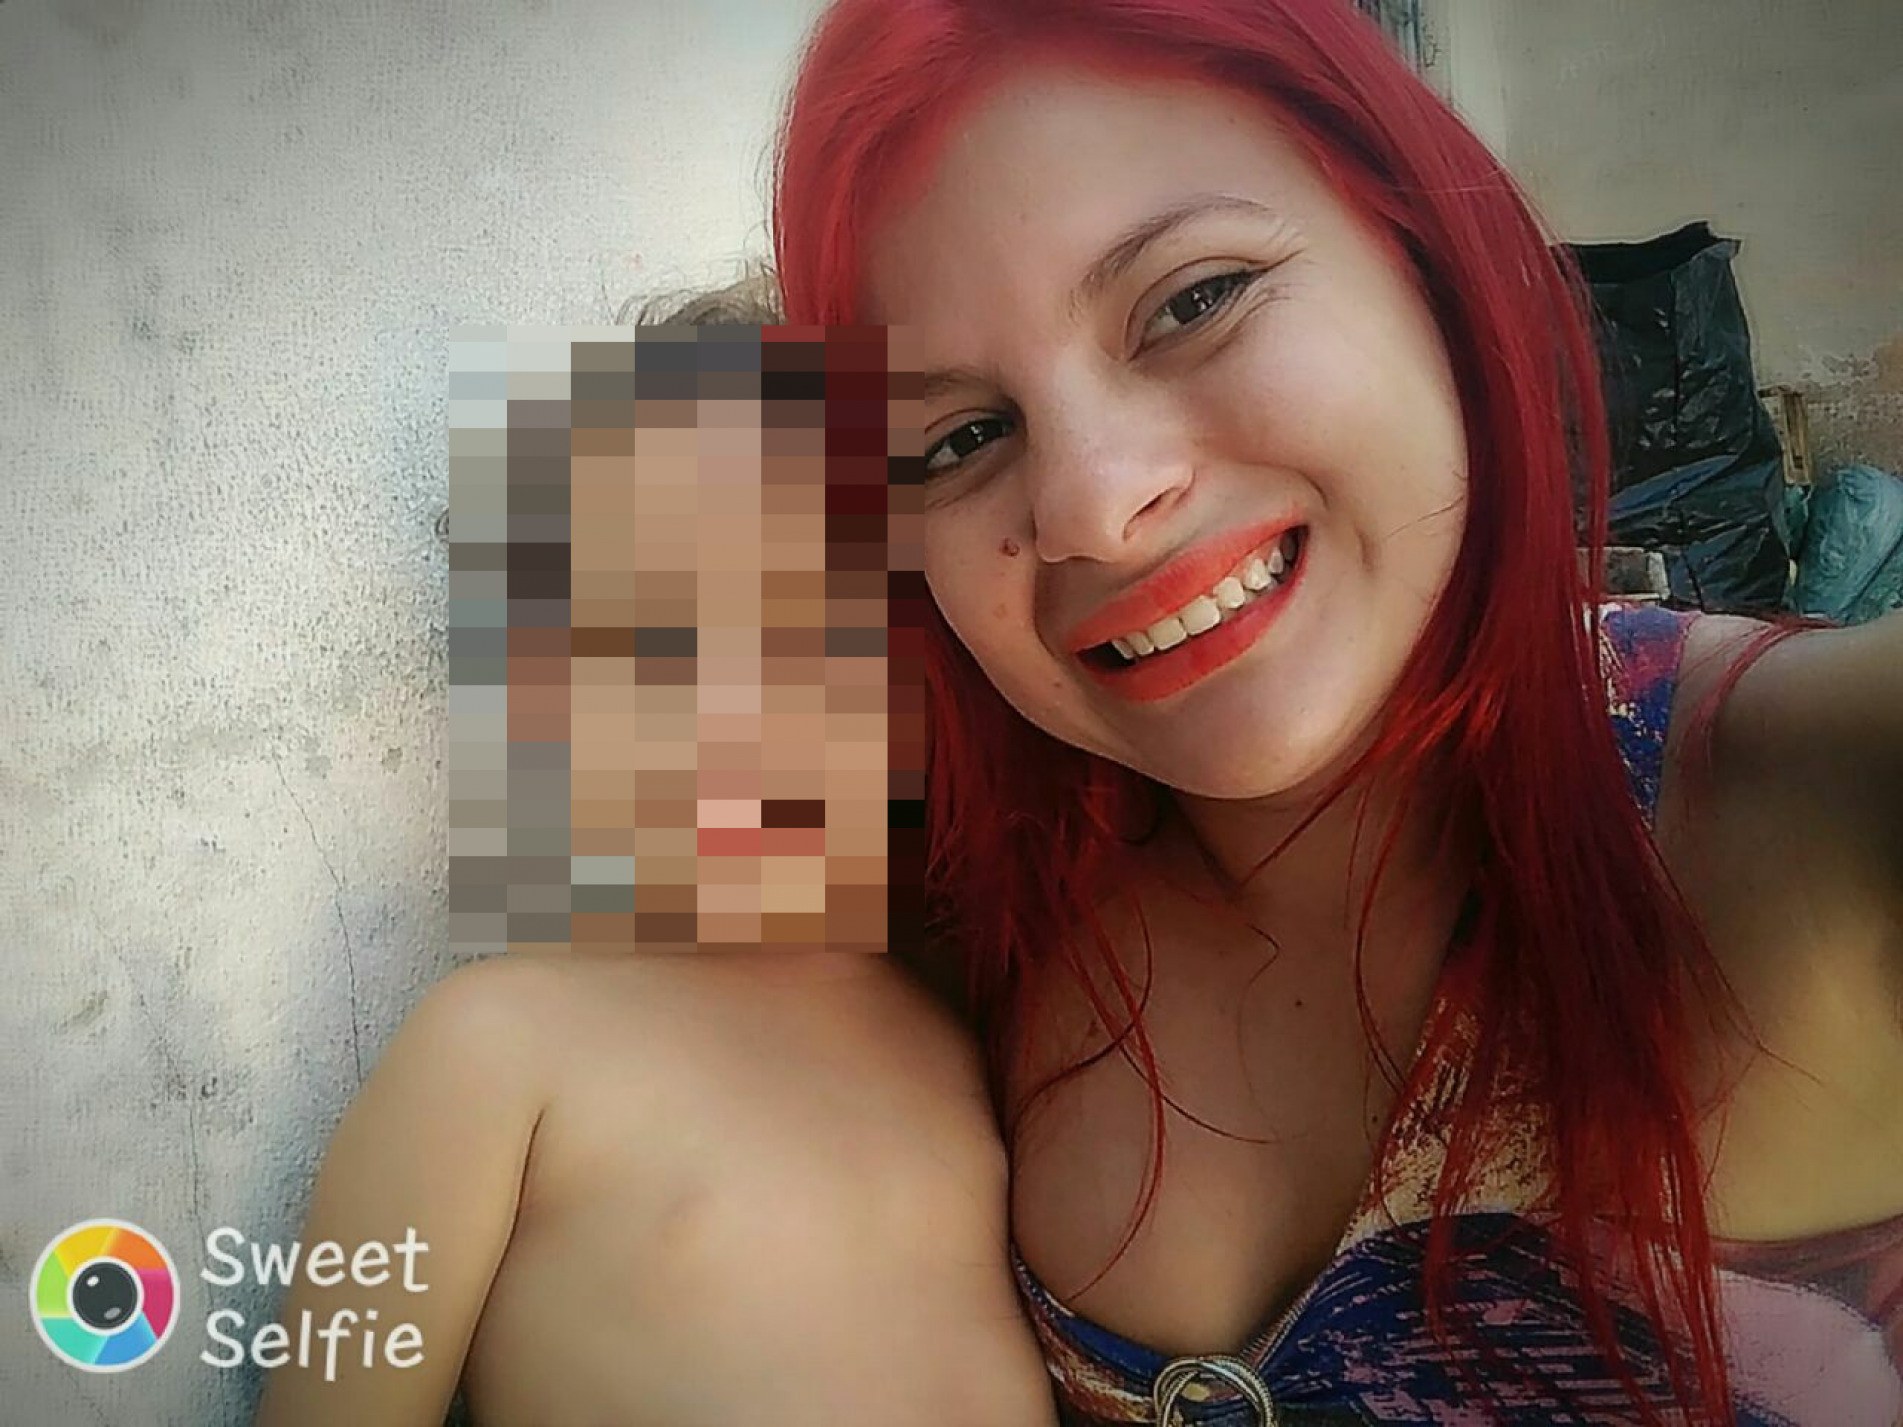 A mãe da criança, Juliana Jovino, foi encontrada morta na represa de Itupararanga há quatro anos